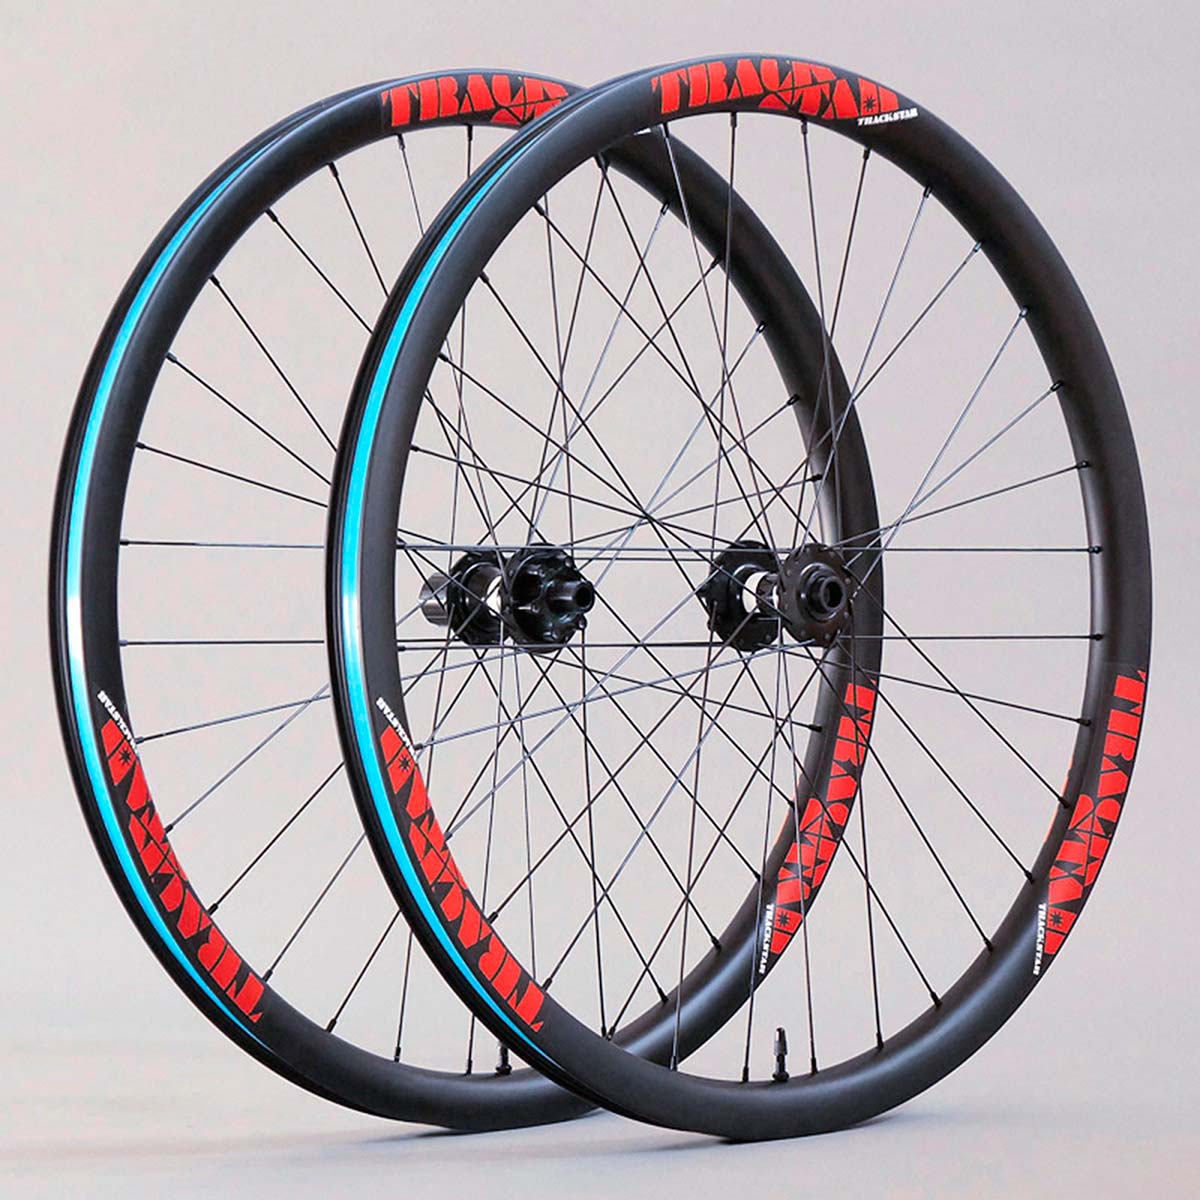 En TodoMountainBike: Trackstar presenta la Serie-e, su gama de ruedas de carbono para bicicletas eléctricas